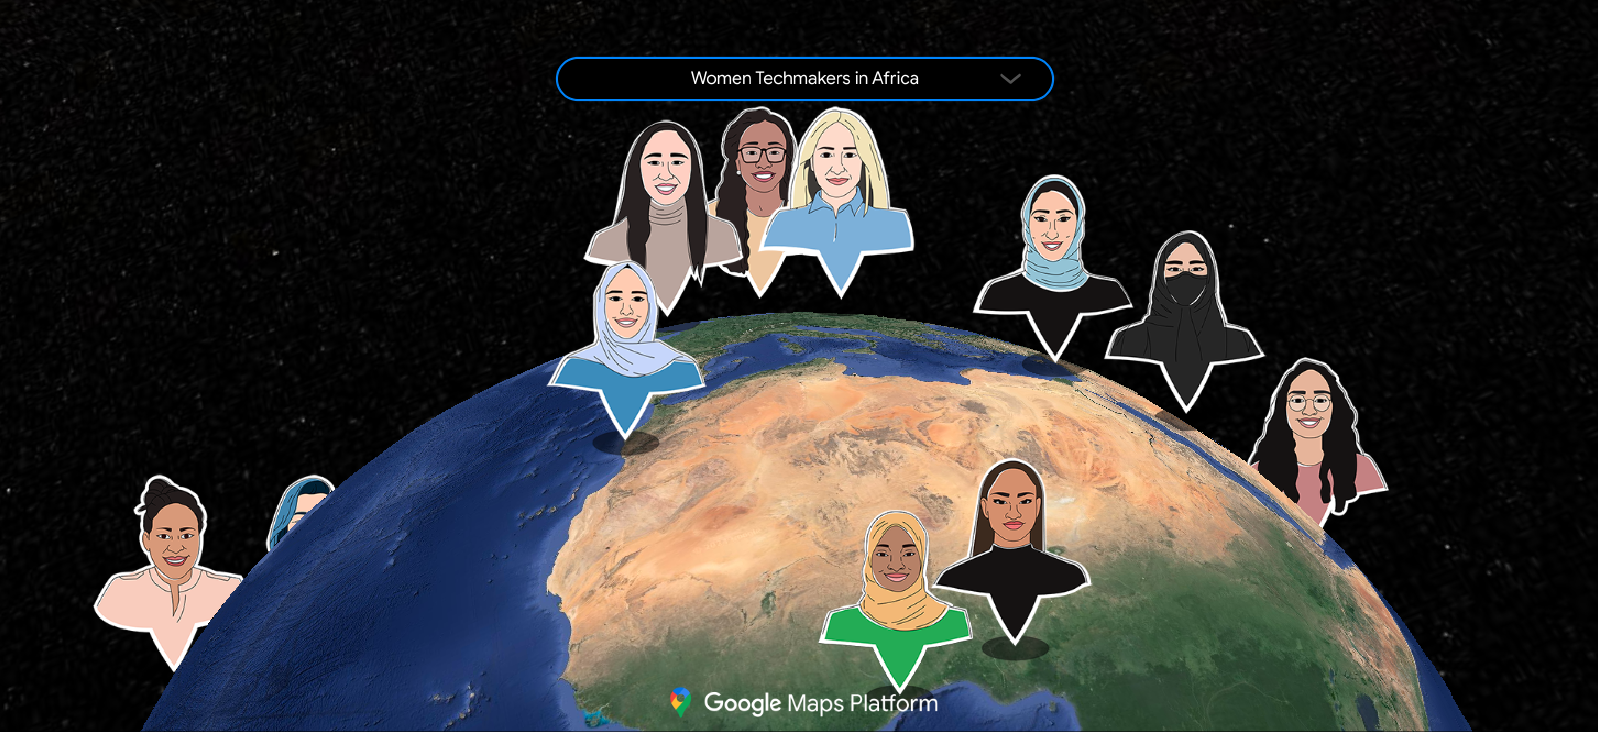 一张显示 Women Techmakers 大使全球网络的地图，图中描绘了一群多元化的用户，分别根据各自的国家/地区放在地图上。